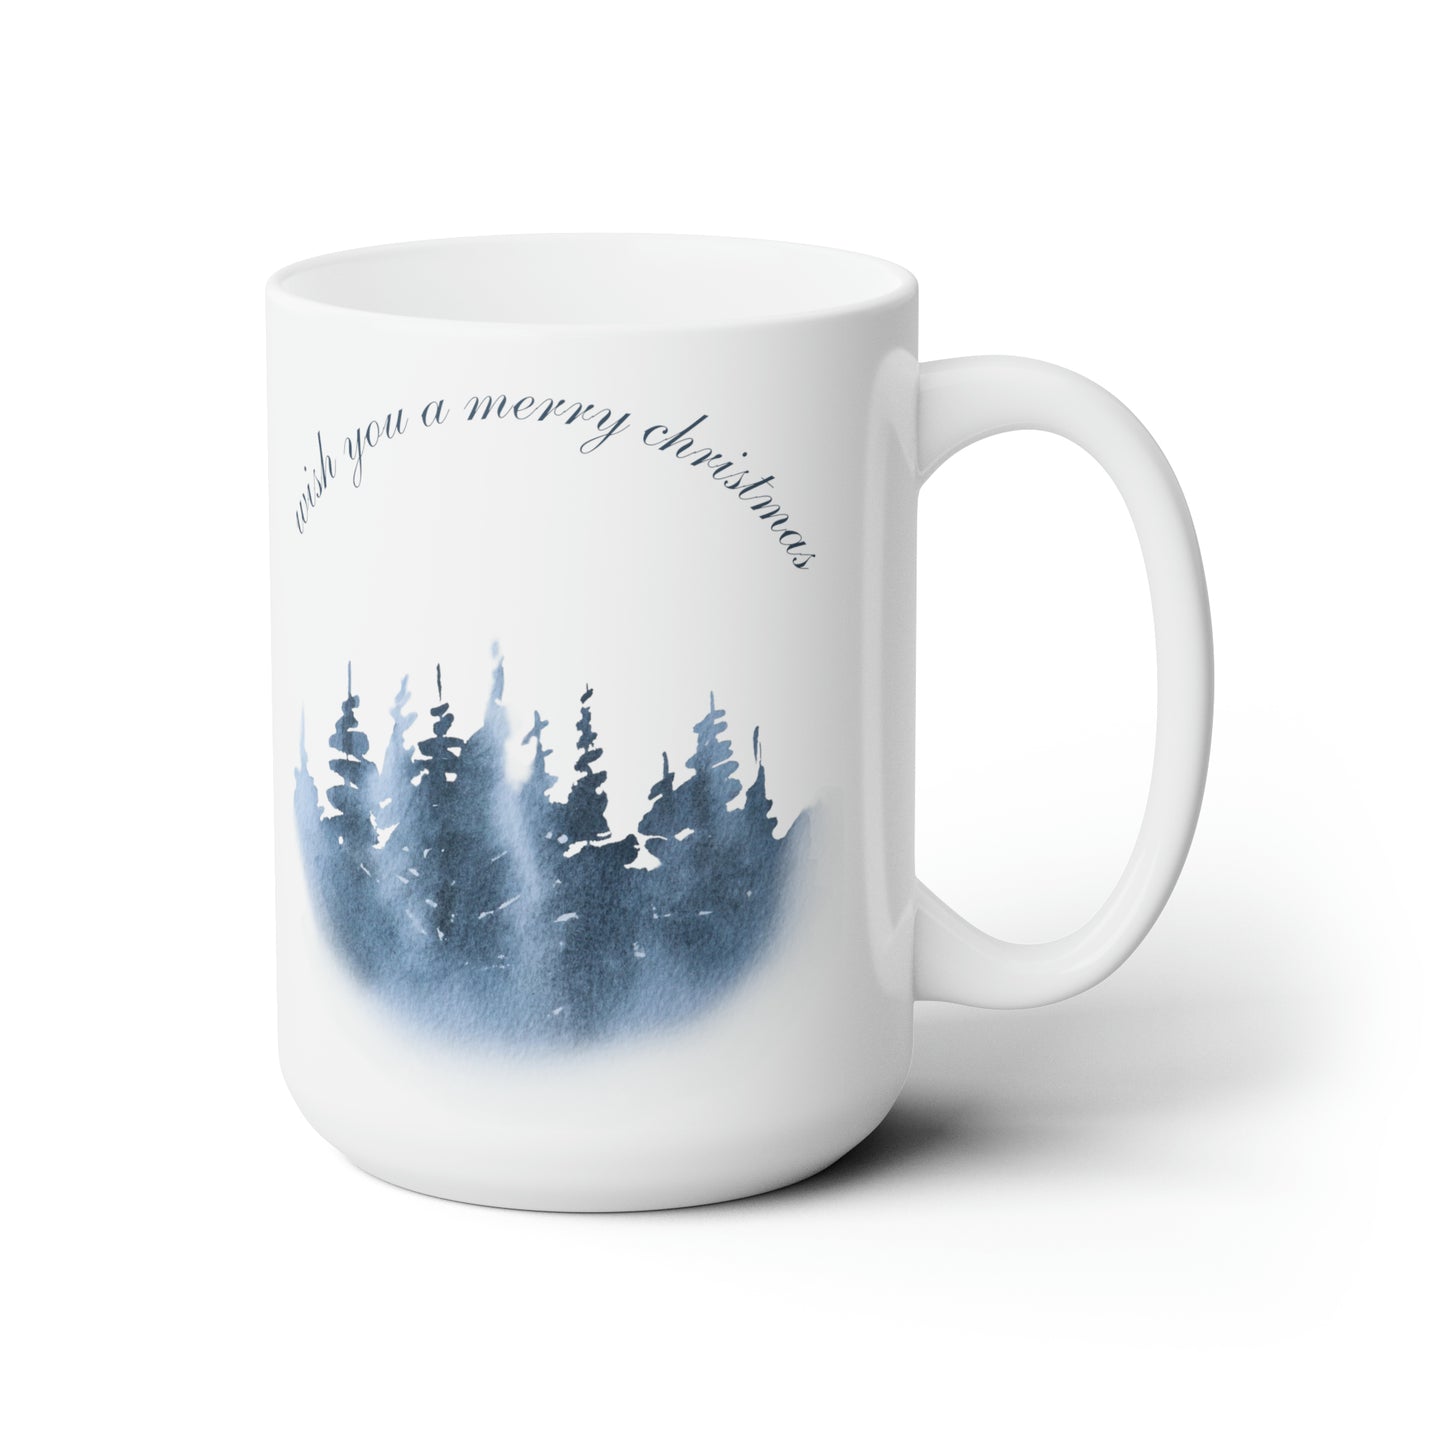 Wish You a Merry Christmas Printed Ceramic Mugs, 15 oz